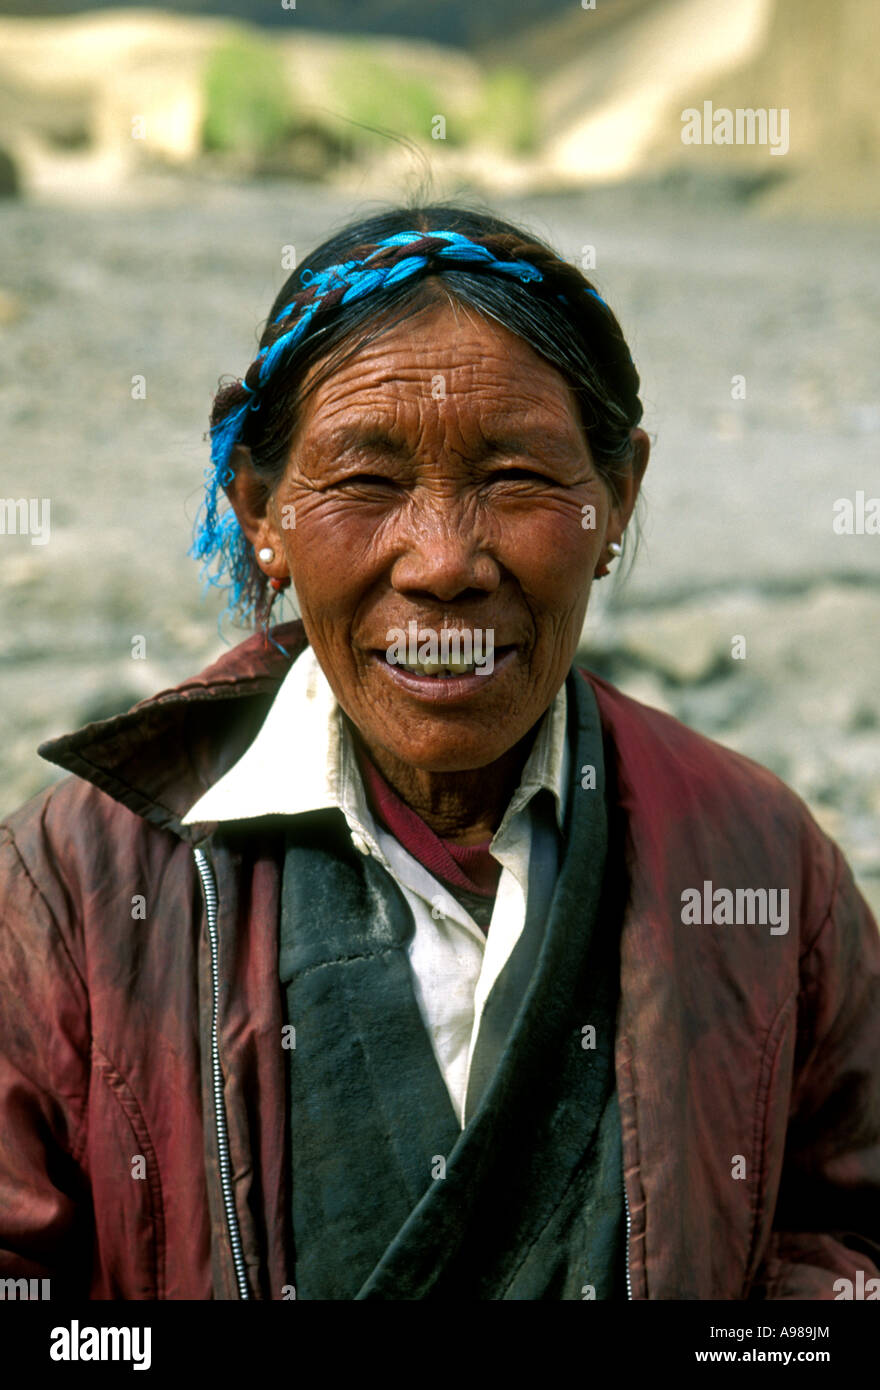 1, una donna tibetana, Tibetani, donna donna anziana, donna matura, contatto visivo, vista frontale, ritratto, a sud del Lago Yamdrok, Tibet, Cina e Asia Foto Stock